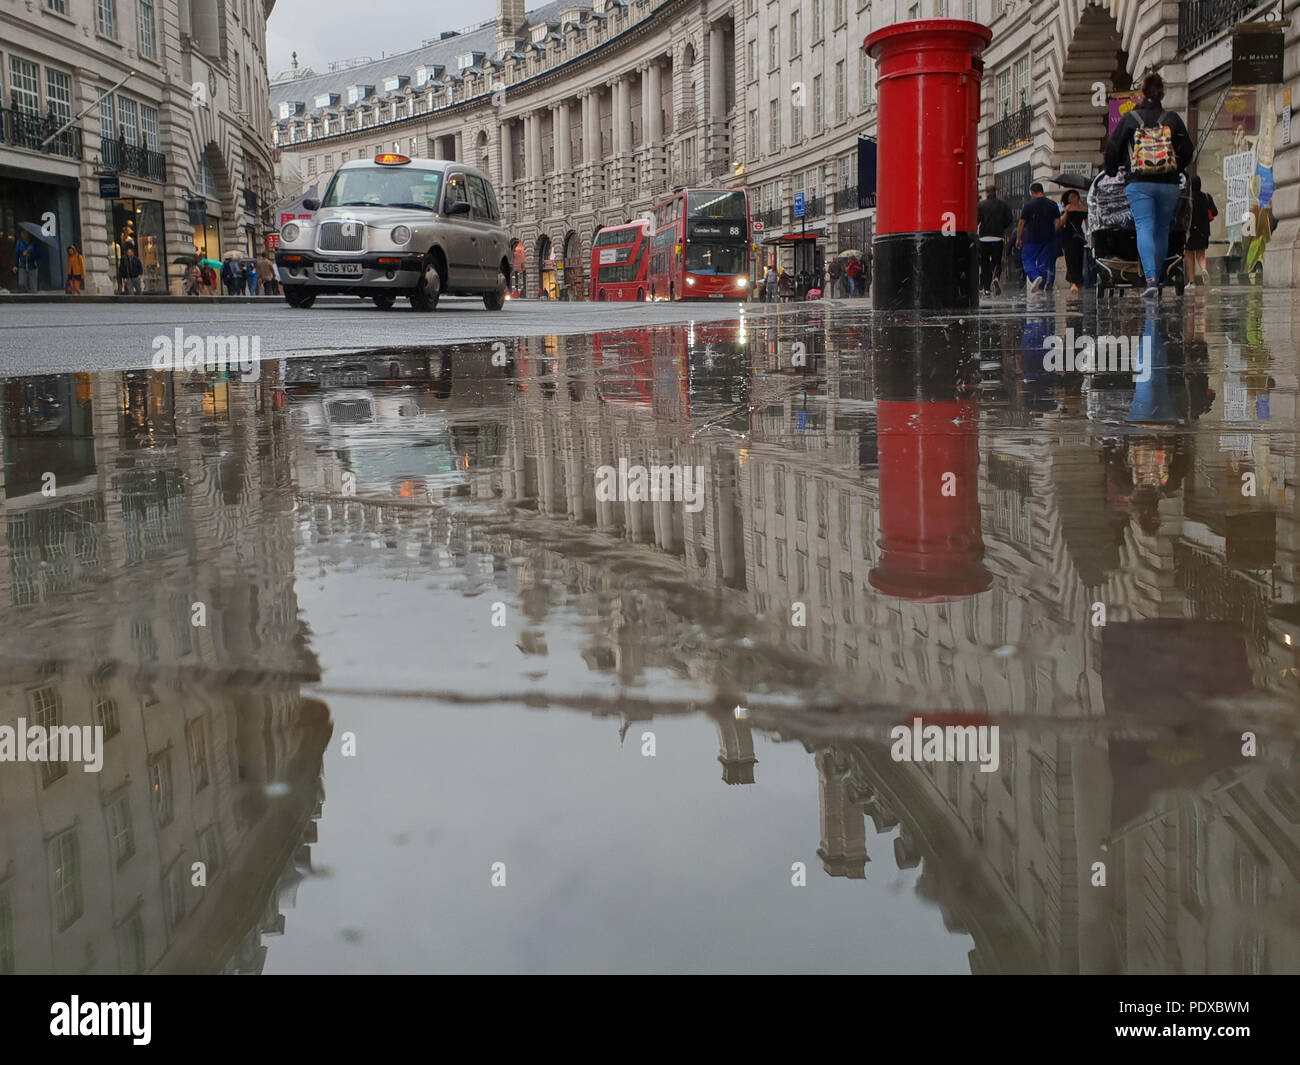 Regents Street. Londres. UK 10 Aug 2018 - une réflexion de Londres en taxi noir et une boite aux lettres dans une grande flaque d'eau de pluie dans la rue Regent après une des fortes pluies dans le centre de Londres. Roamwithrakhee Crédit /Alamy Live News Banque D'Images